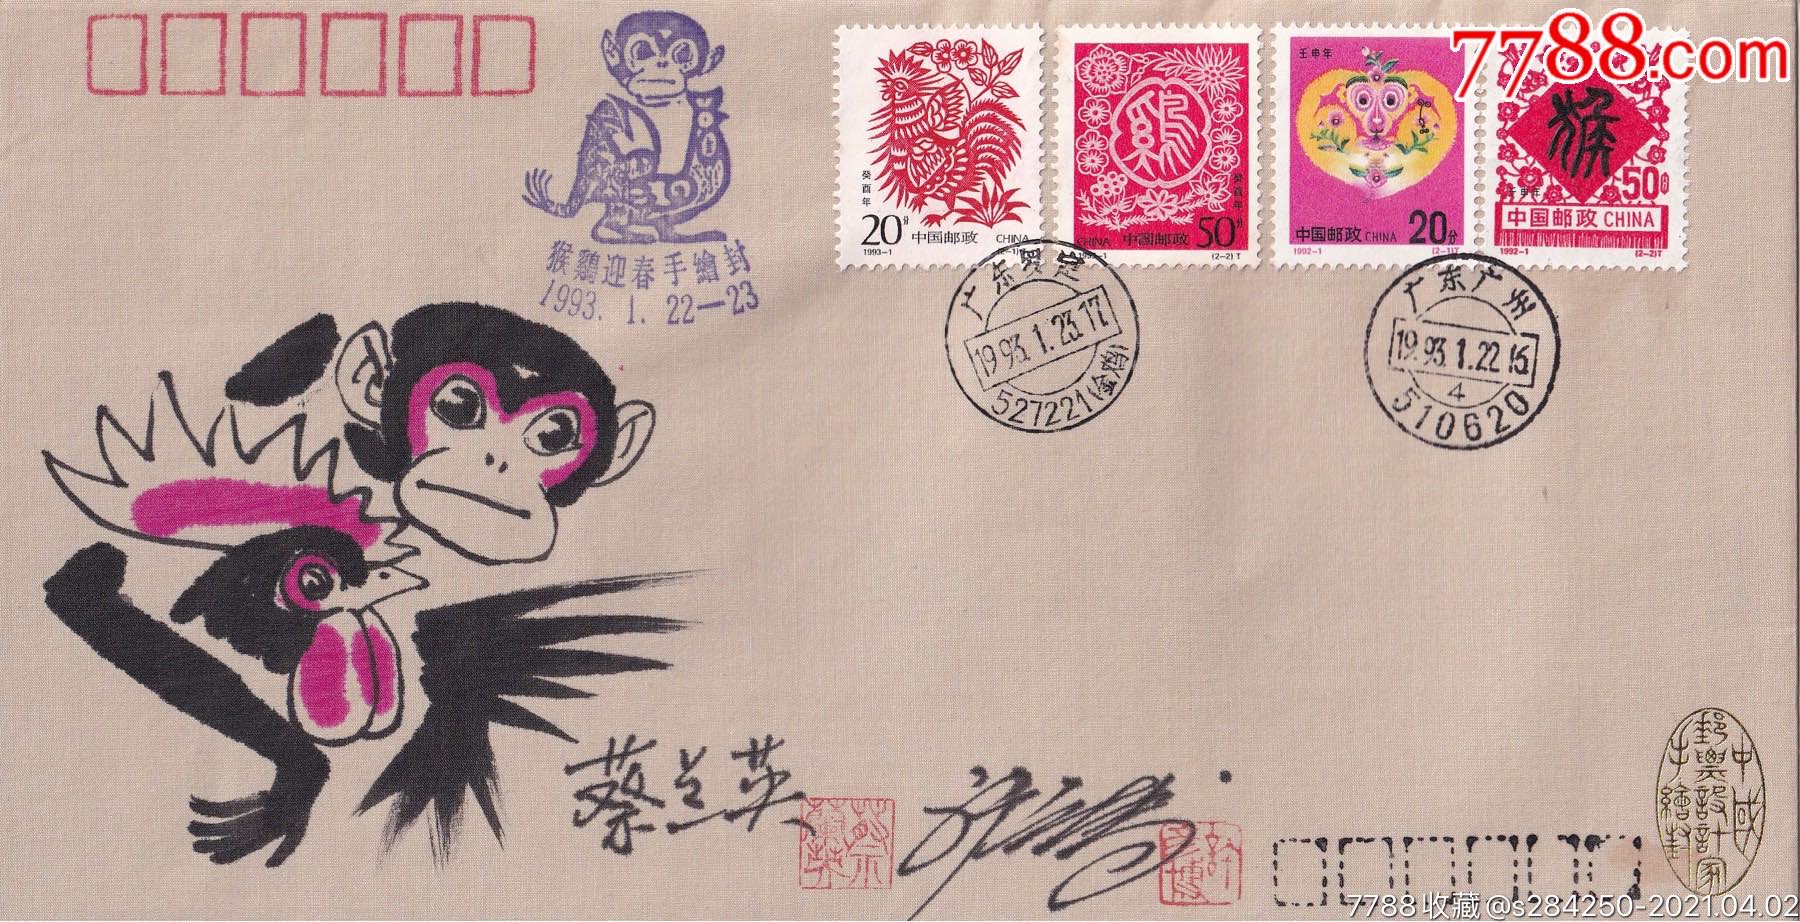 蔡兰英许彦博合绘手绘封官方限量发行手绘封中国广州羊城邮票社官方